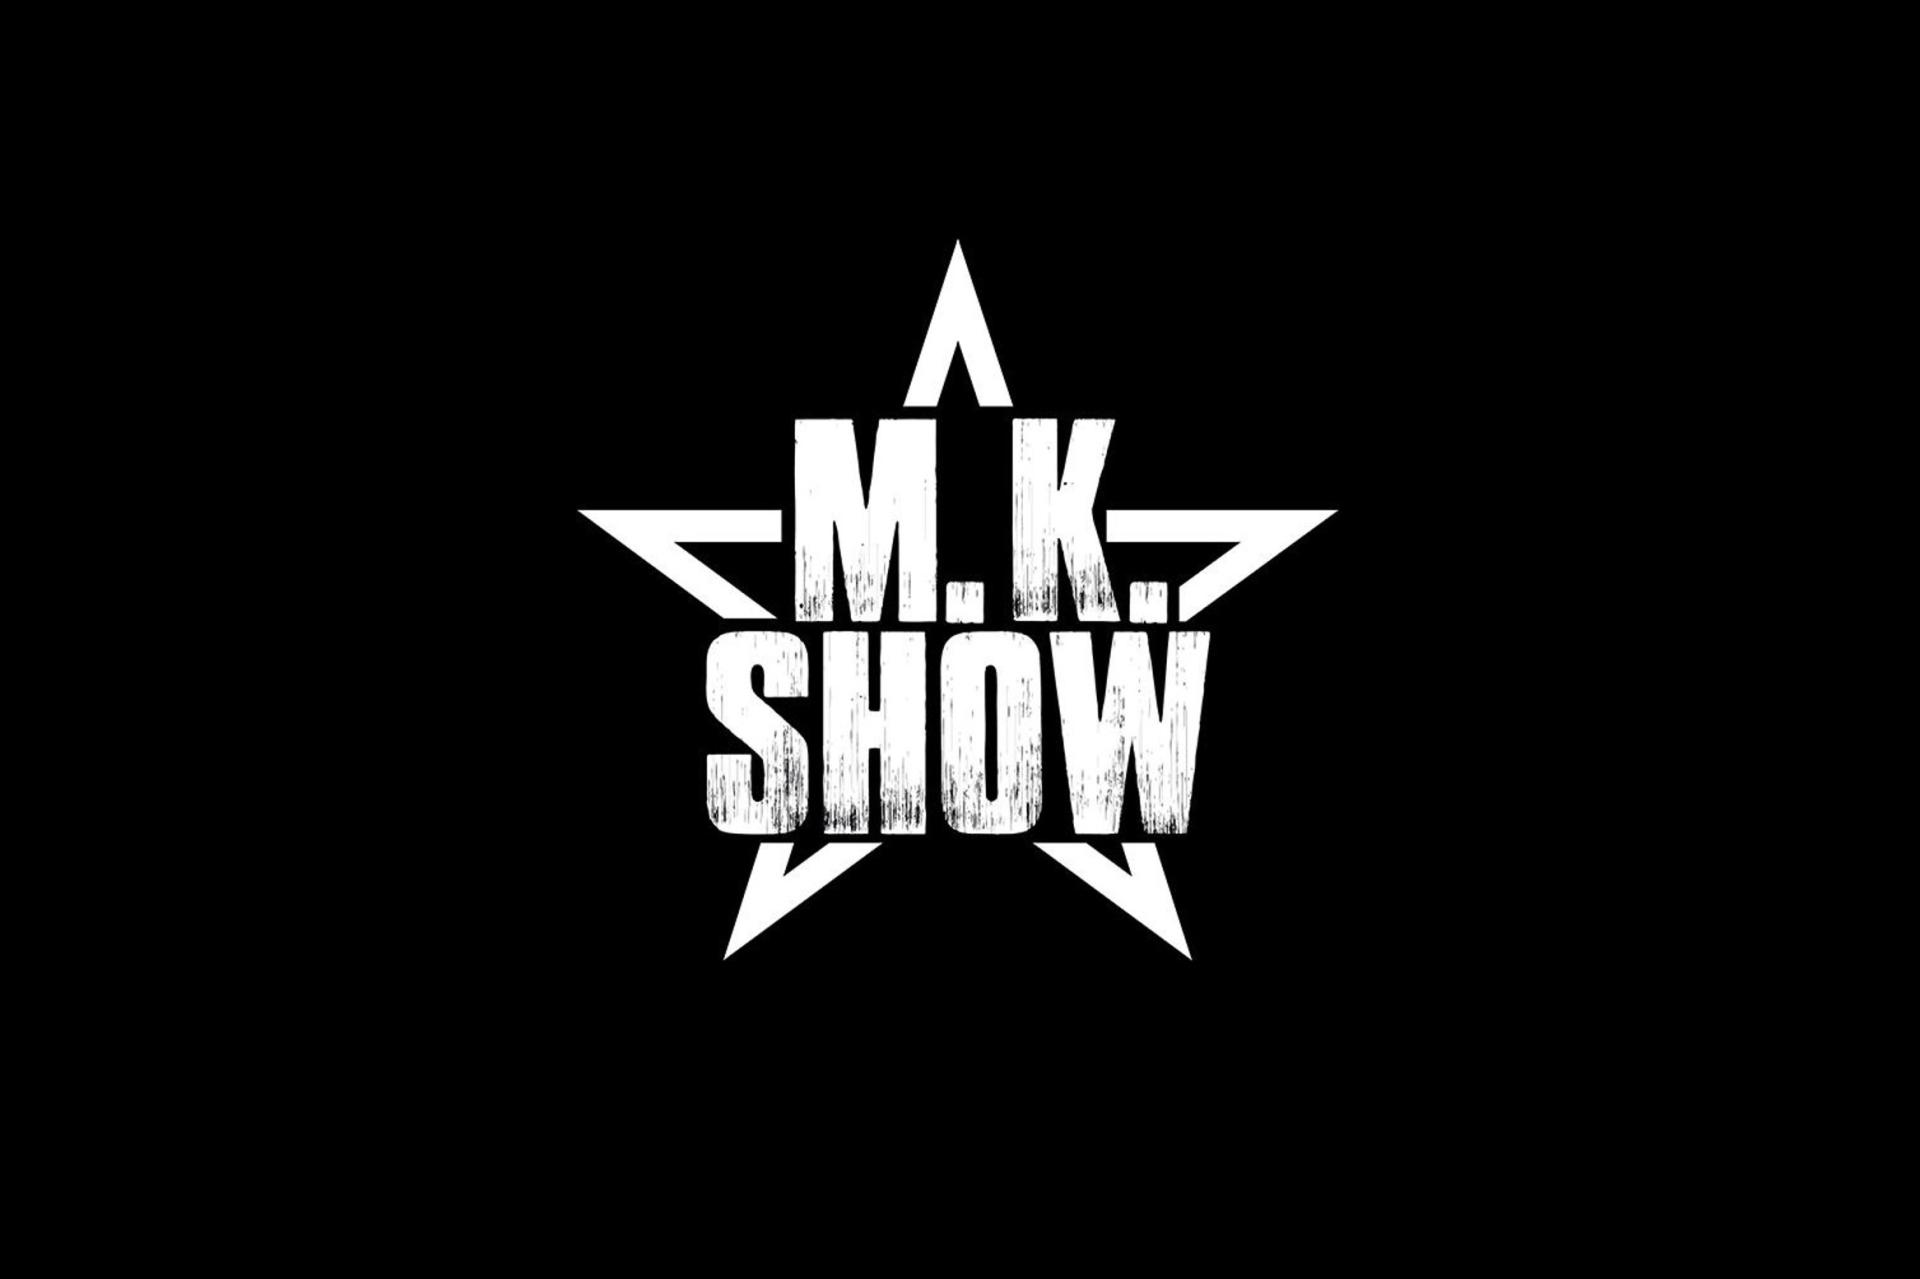 Talkshow: MK SHOW